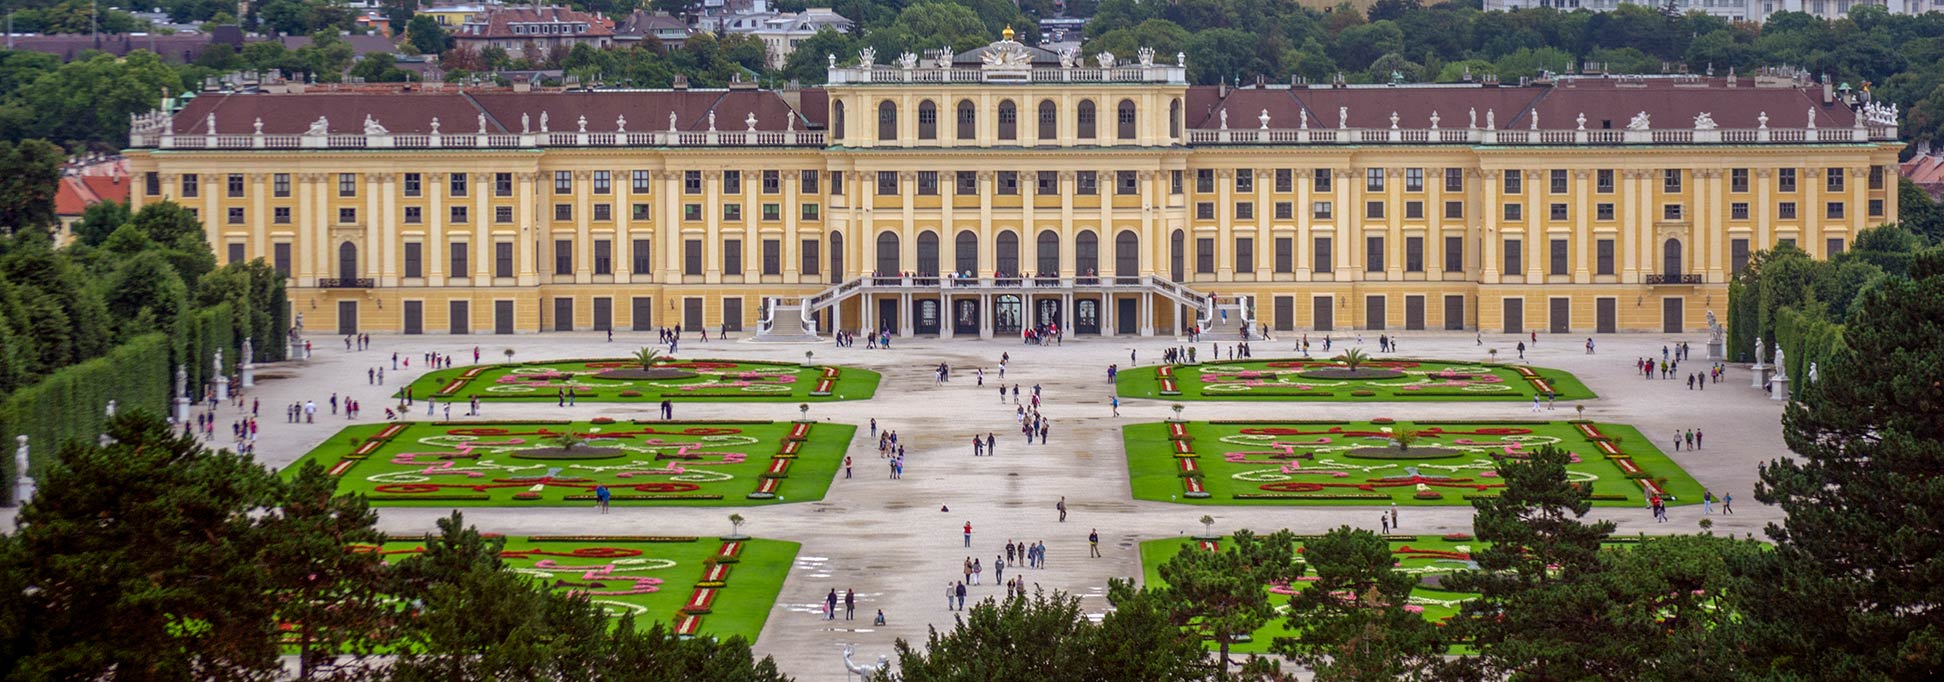 UNESCO World Heritage Site Schönbrunn Palace and gardens in Vienna, Austria